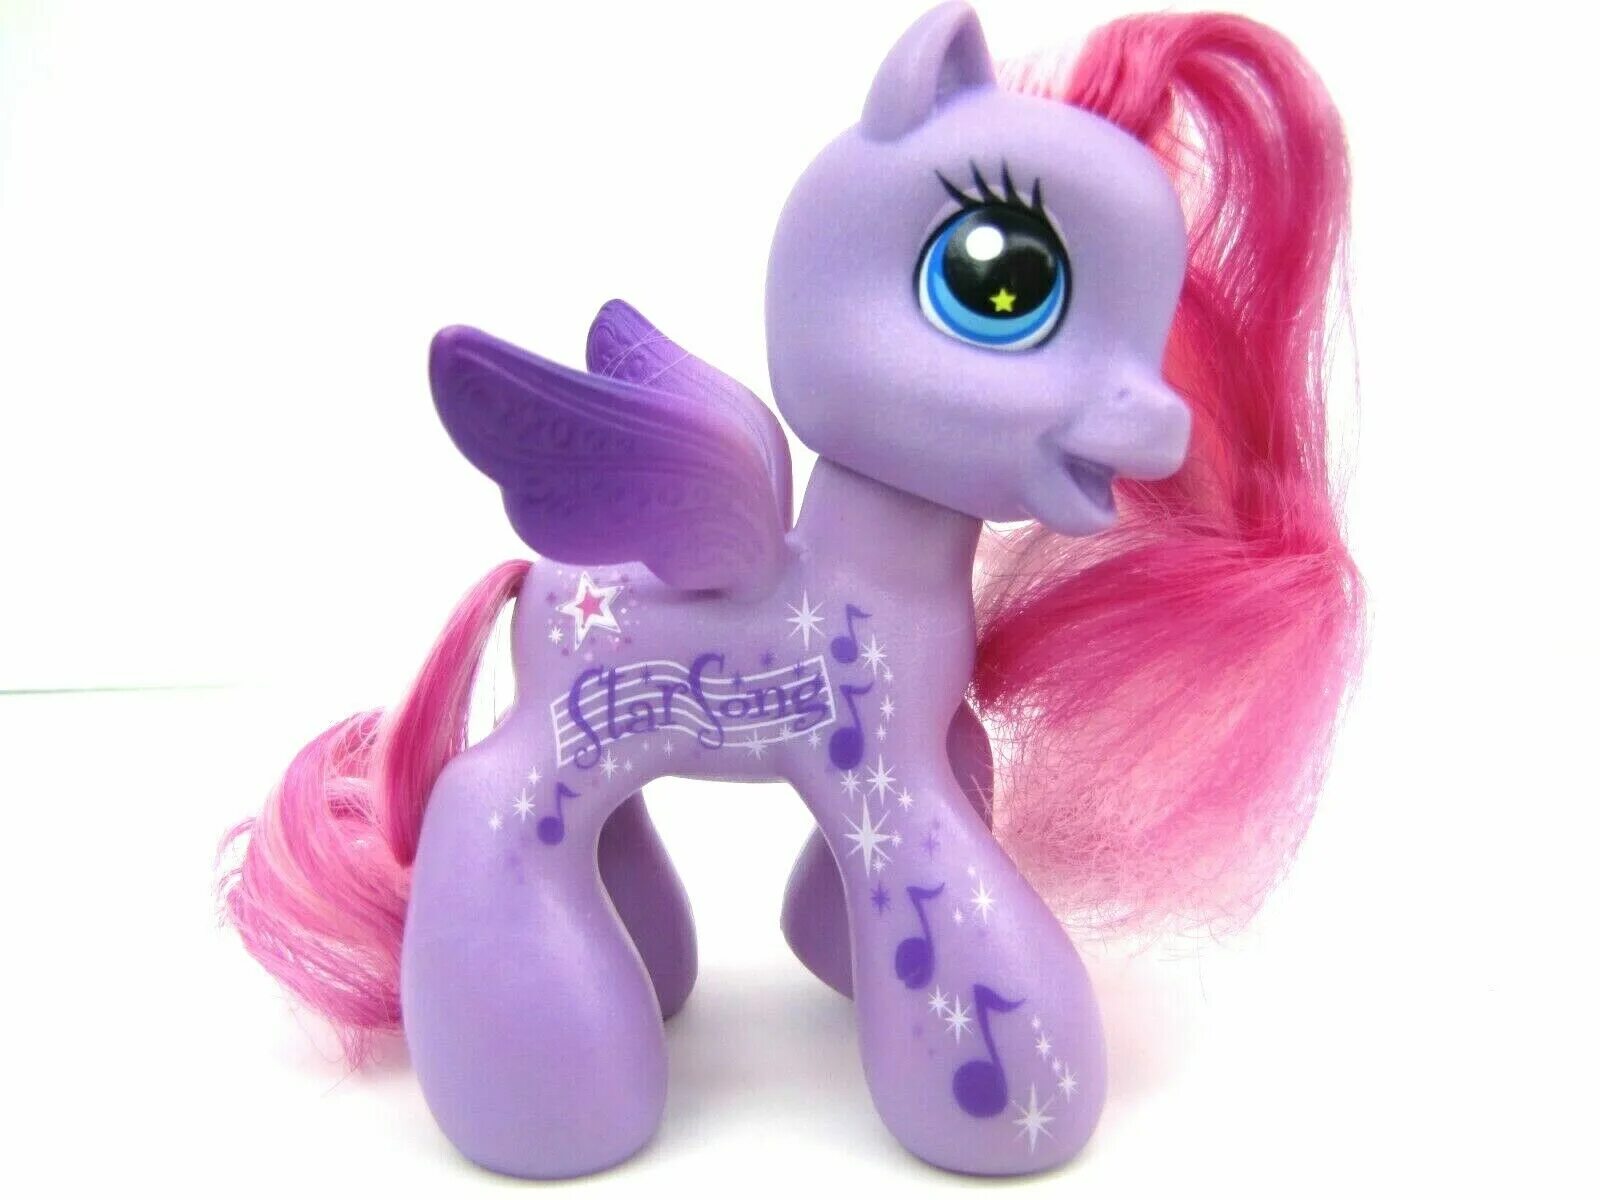 Новые игрушки литл пони. "My little Pony 3" акс-1831. Пони 3 поколение Старсонг. Интерактивная пони Звездочка Хасбро. My little Pony Starsong.